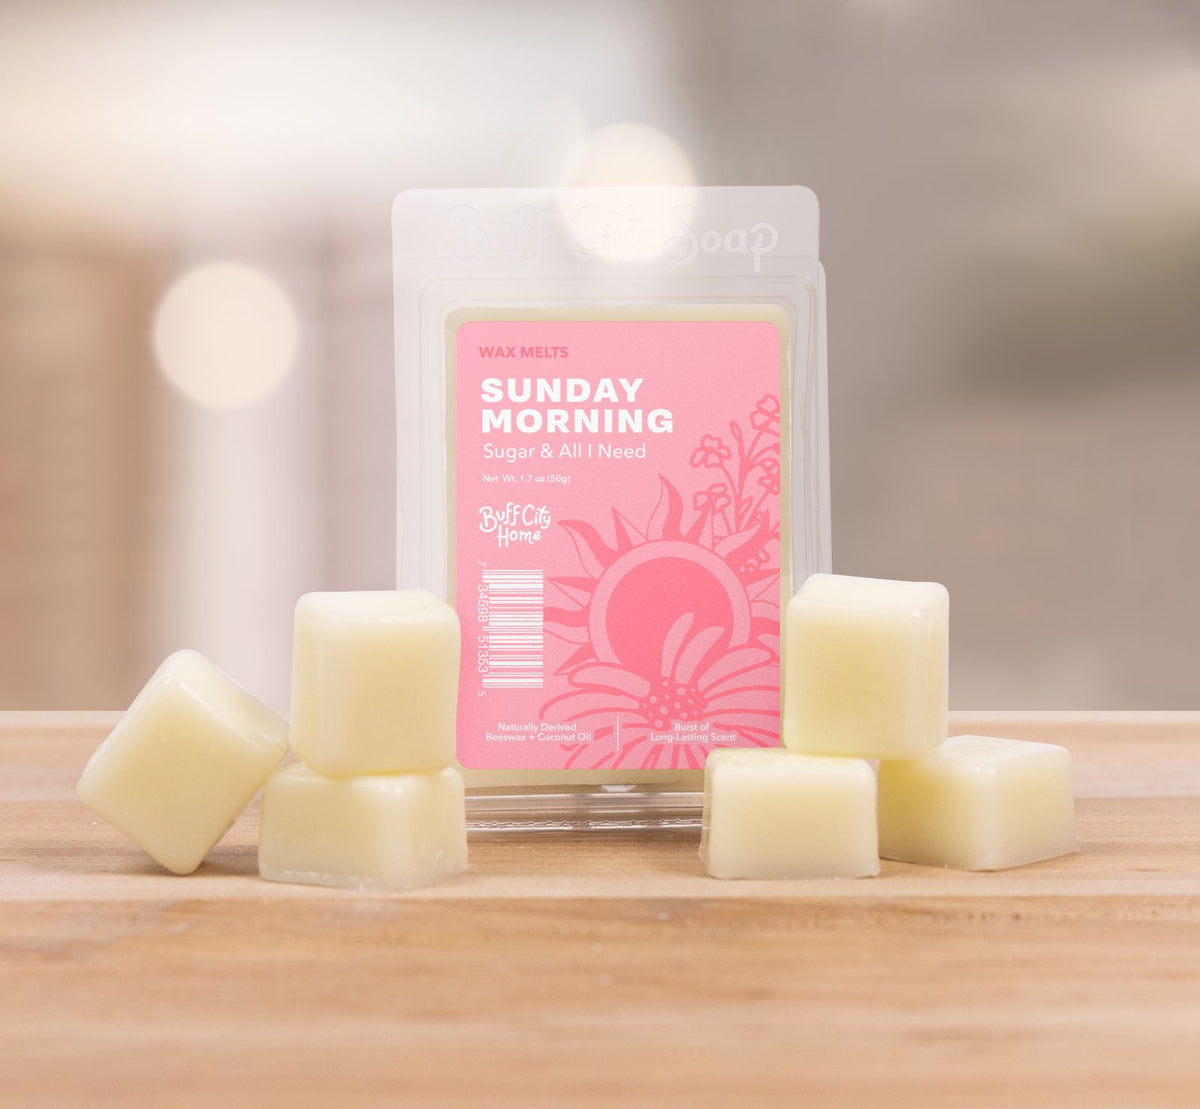 Sunday Morning Wax Melts – Buff City Soap